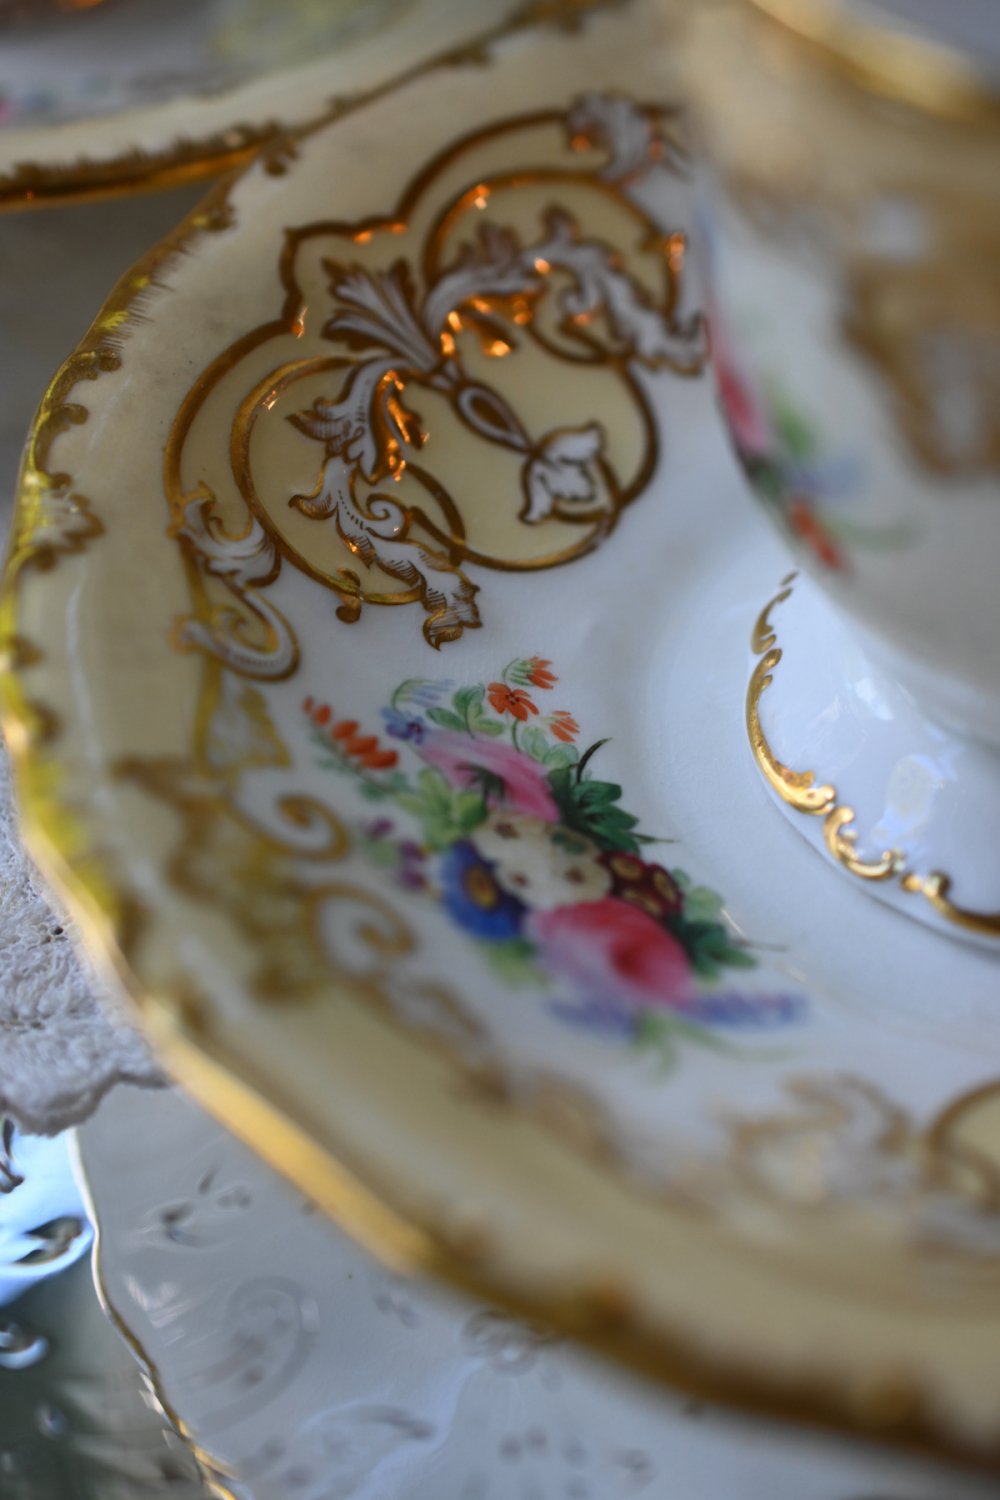 １８３３年ー１８４７年 コープランドギャレット 手描きのブーケ模様と金彩が美しいコーヒーカップデュオ をイギリス コッツウォルズよりお届けいたします。